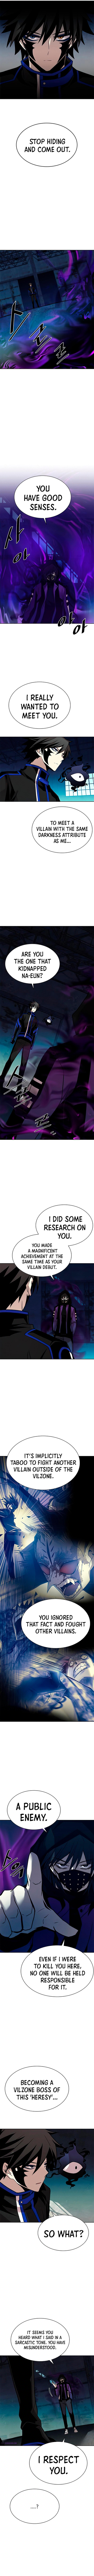 villain to kill Chapter 48